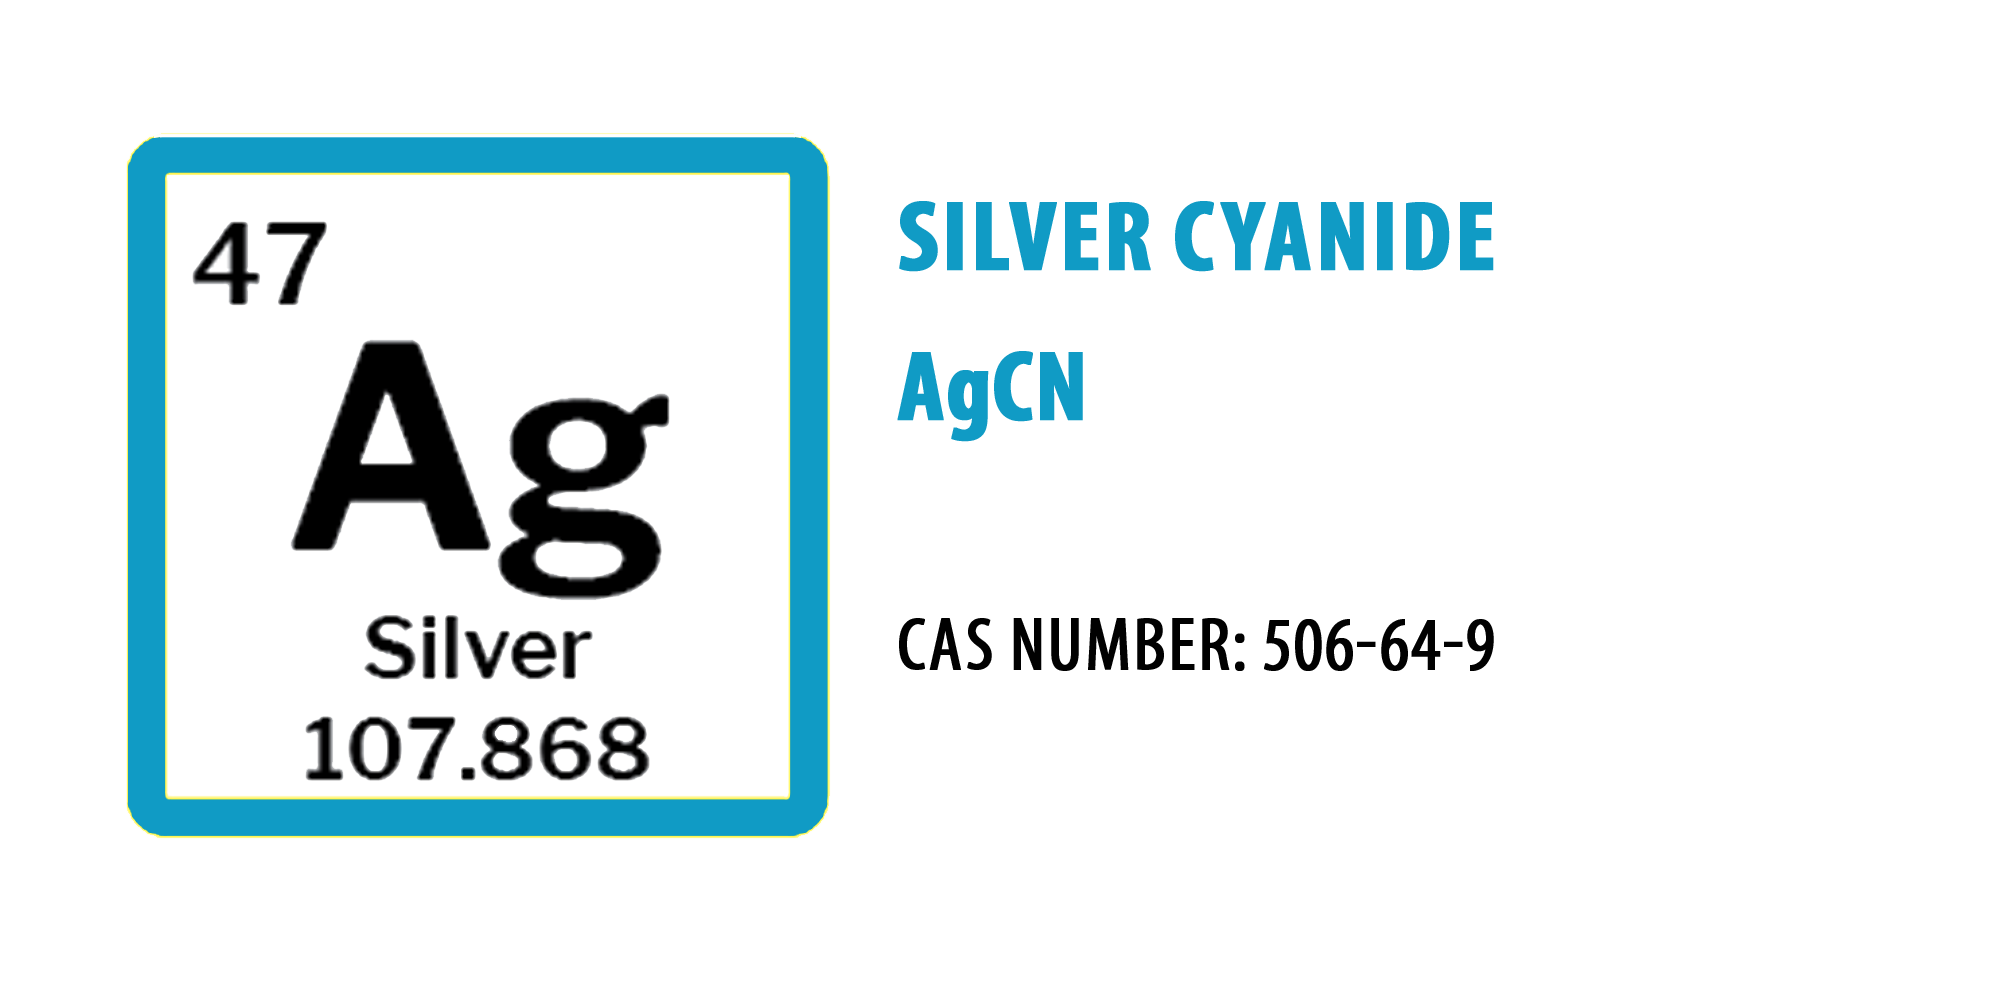 Silver Cyanide